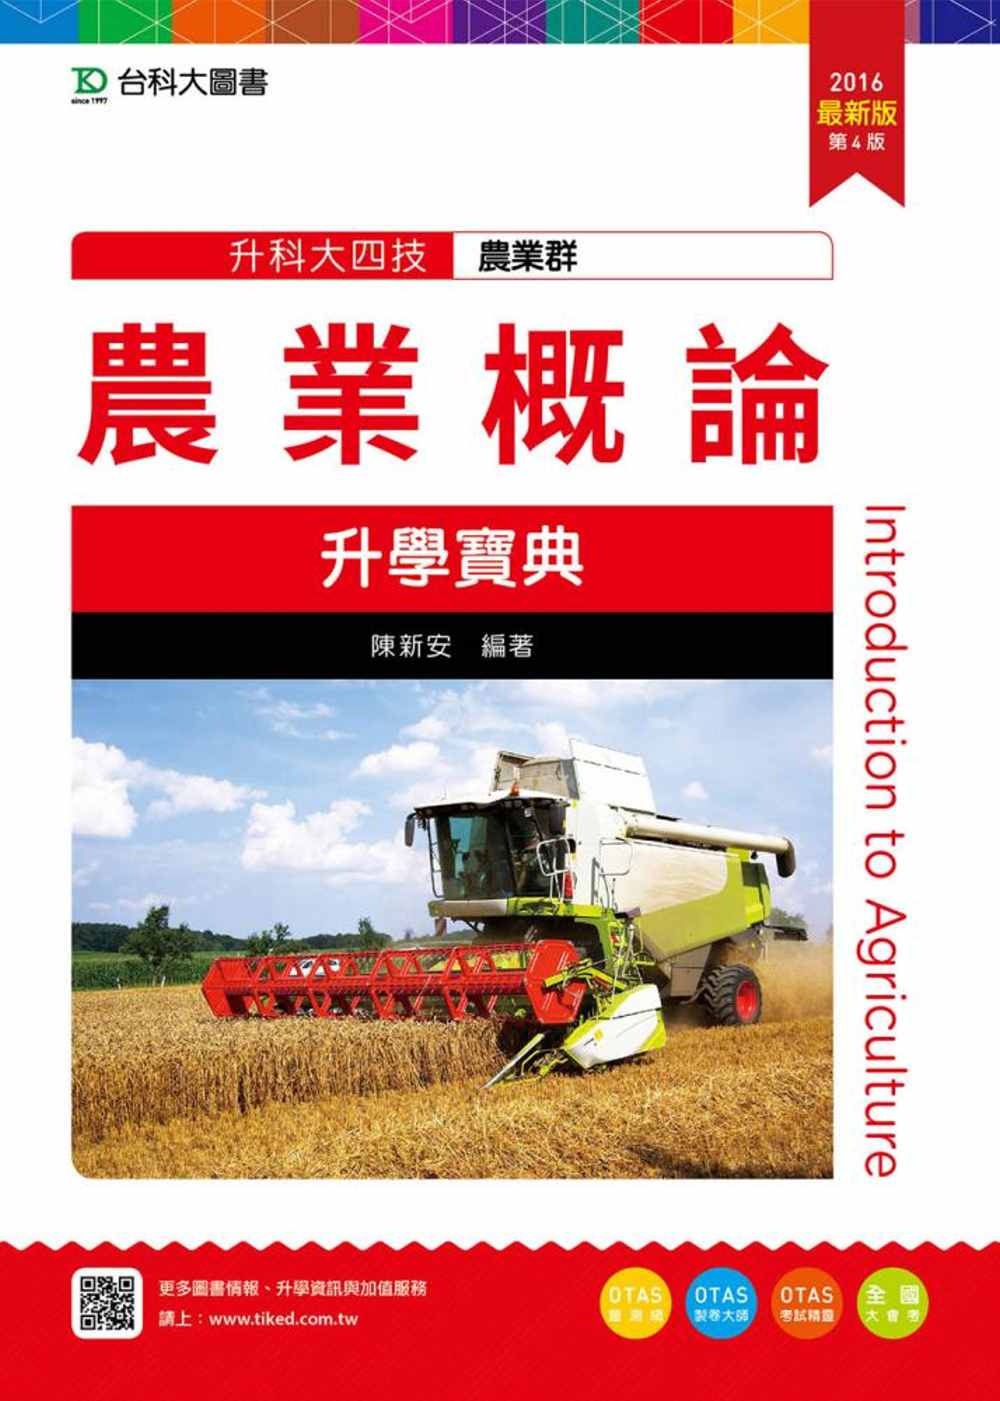 升科大四技農業群農業概論升學寶典(2016年最新版)(第四版)(附贈OTAS題測系統)